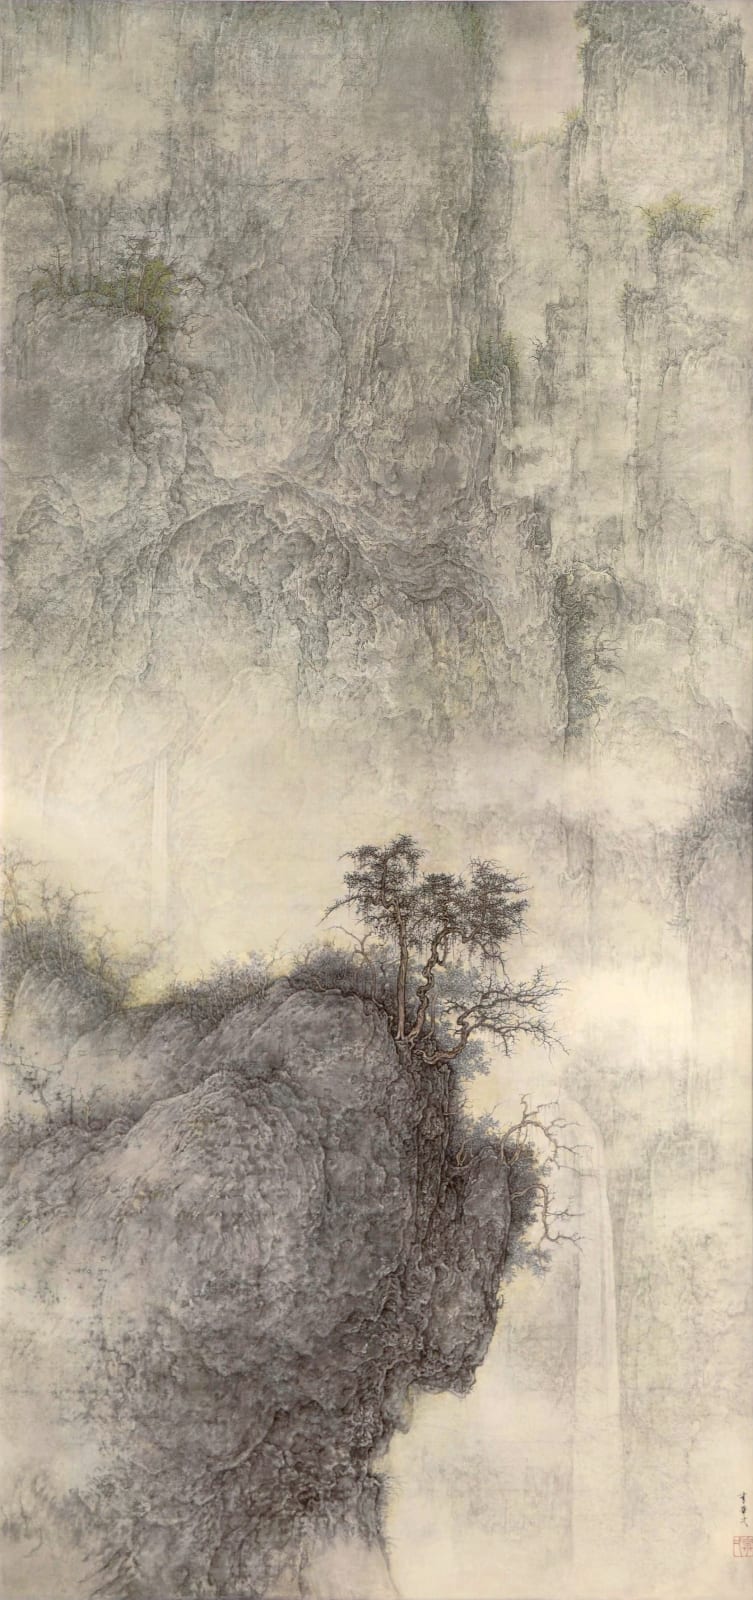 Li Huayi 李華弌, Misty Landscape《遠山蓋霧》, 2005